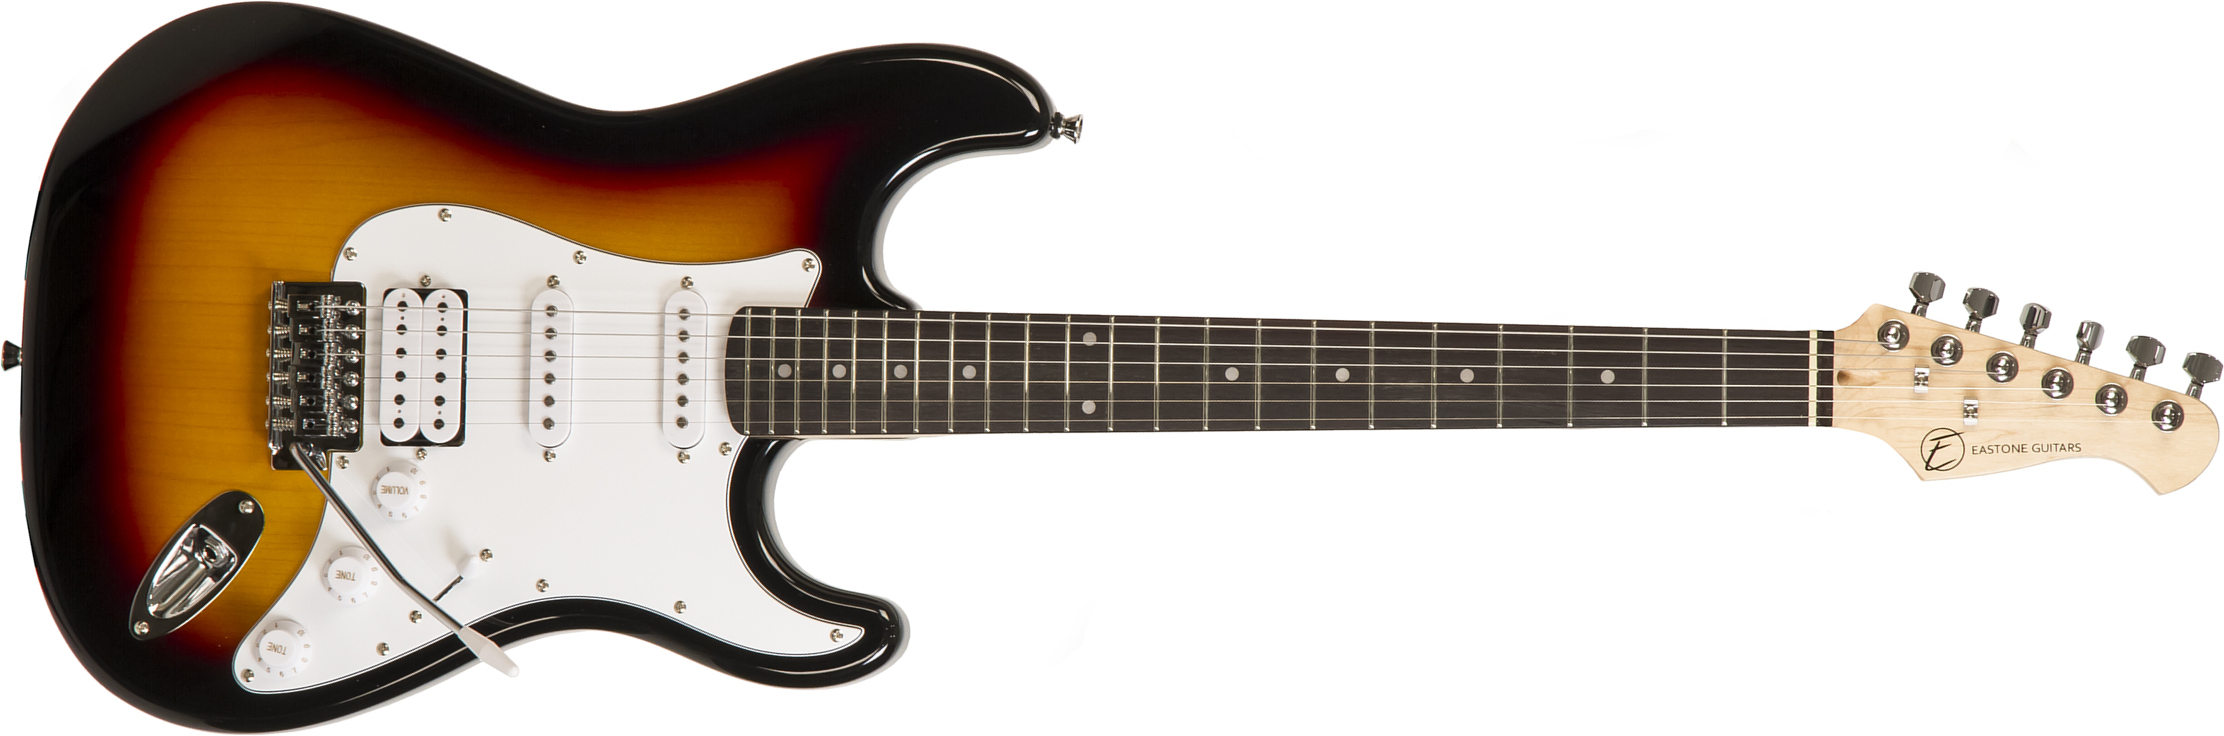 Eastone Str80t 3ts Hss Trem Pur - Sunburst - Str shape electric guitar - Main picture